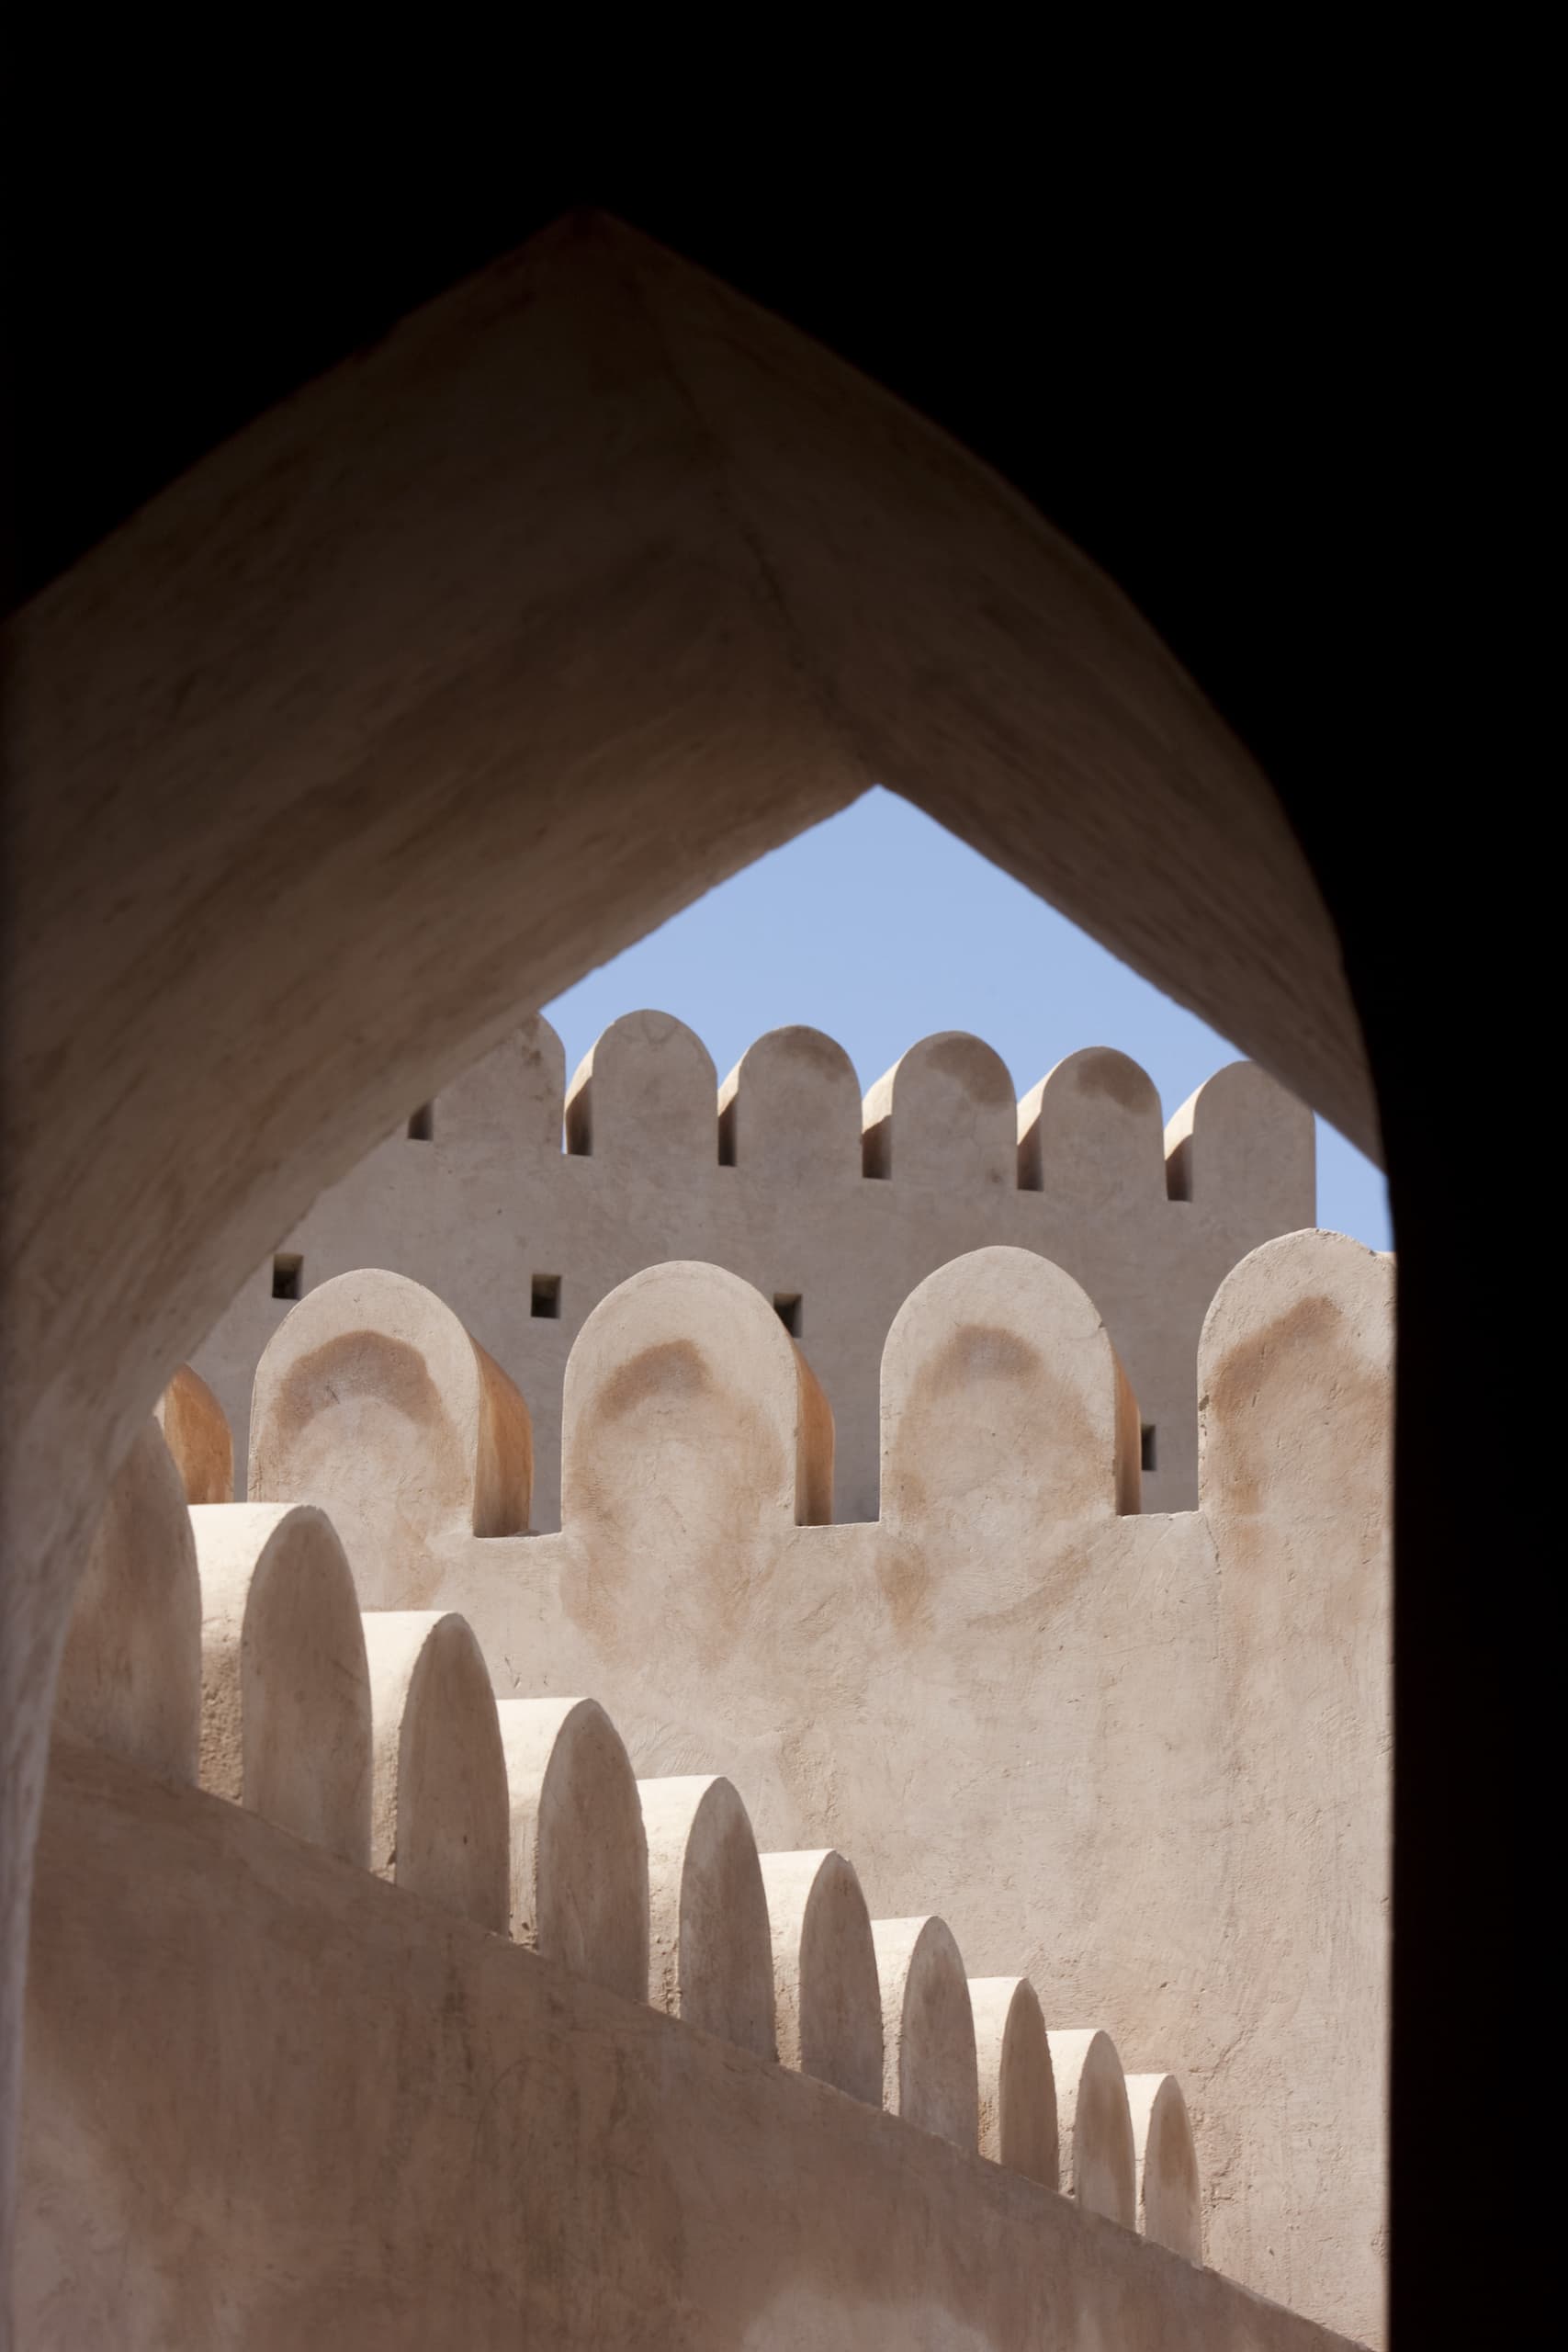 Nakhal Fort in Oman